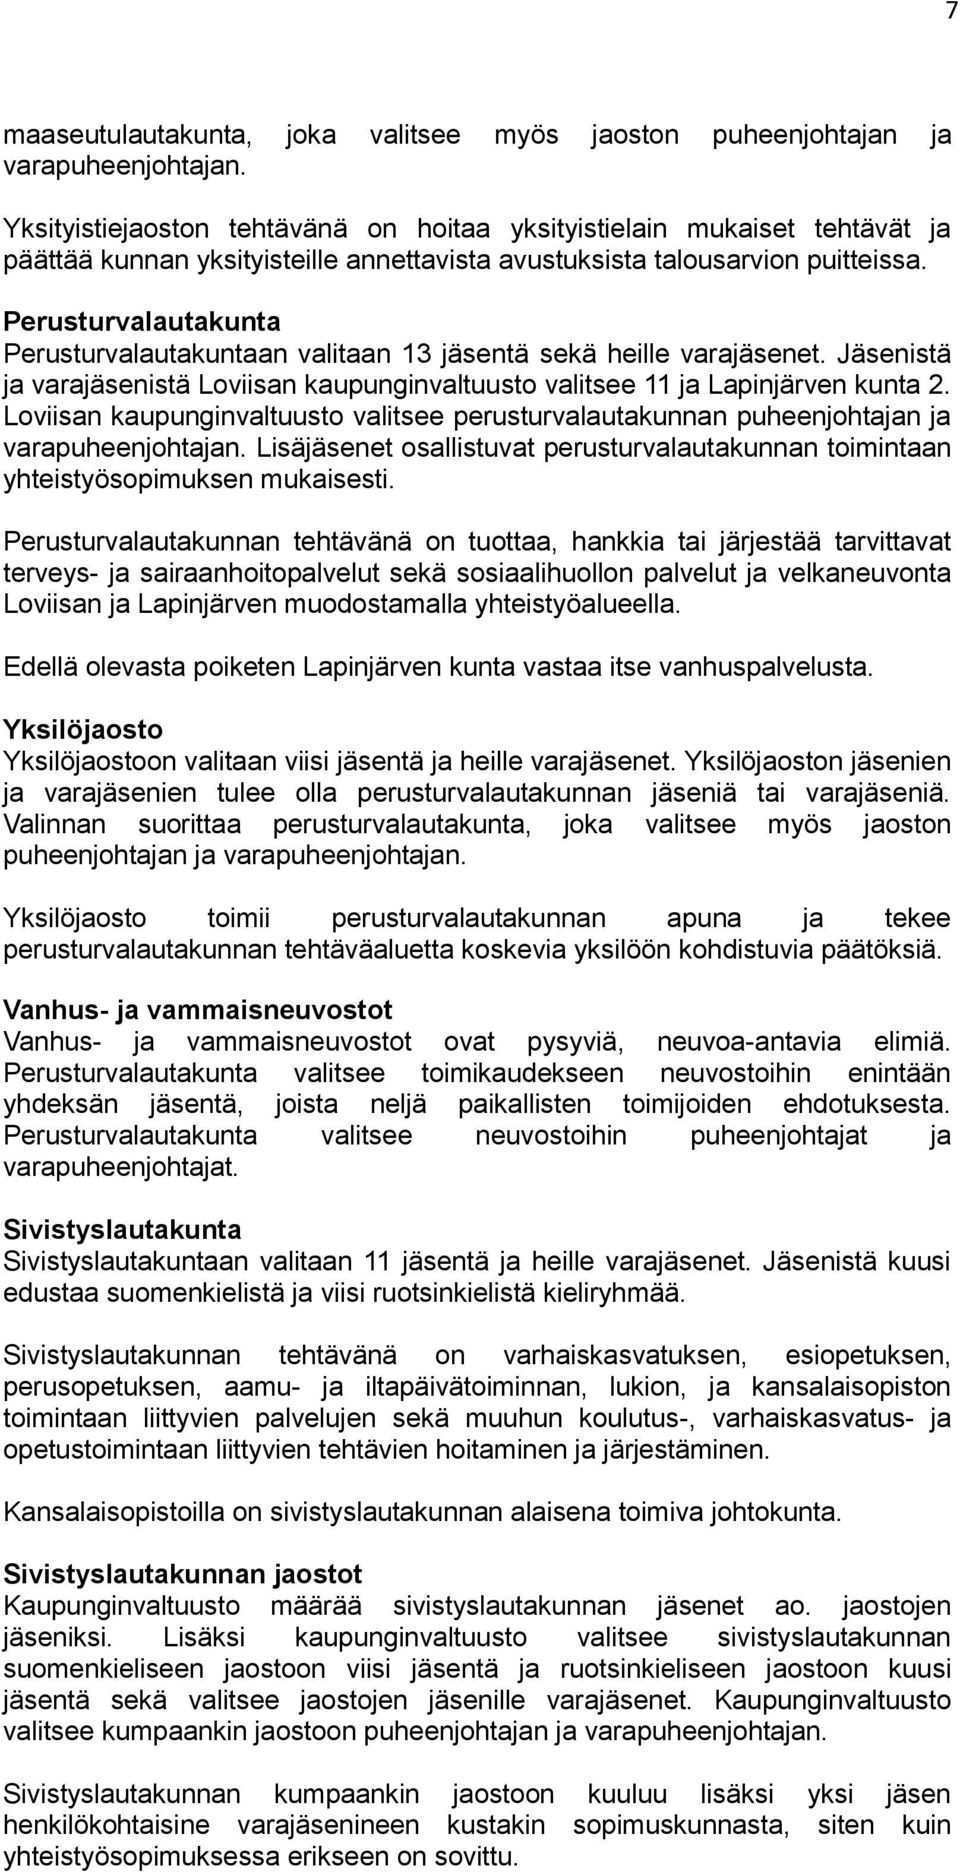 Perusturvalautakunta Perusturvalautakuntaan valitaan 13 jäsentä sekä heille varajäsenet. Jäsenistä ja varajäsenistä Loviisan kaupunginvaltuusto valitsee 11 ja Lapinjärven kunta 2.